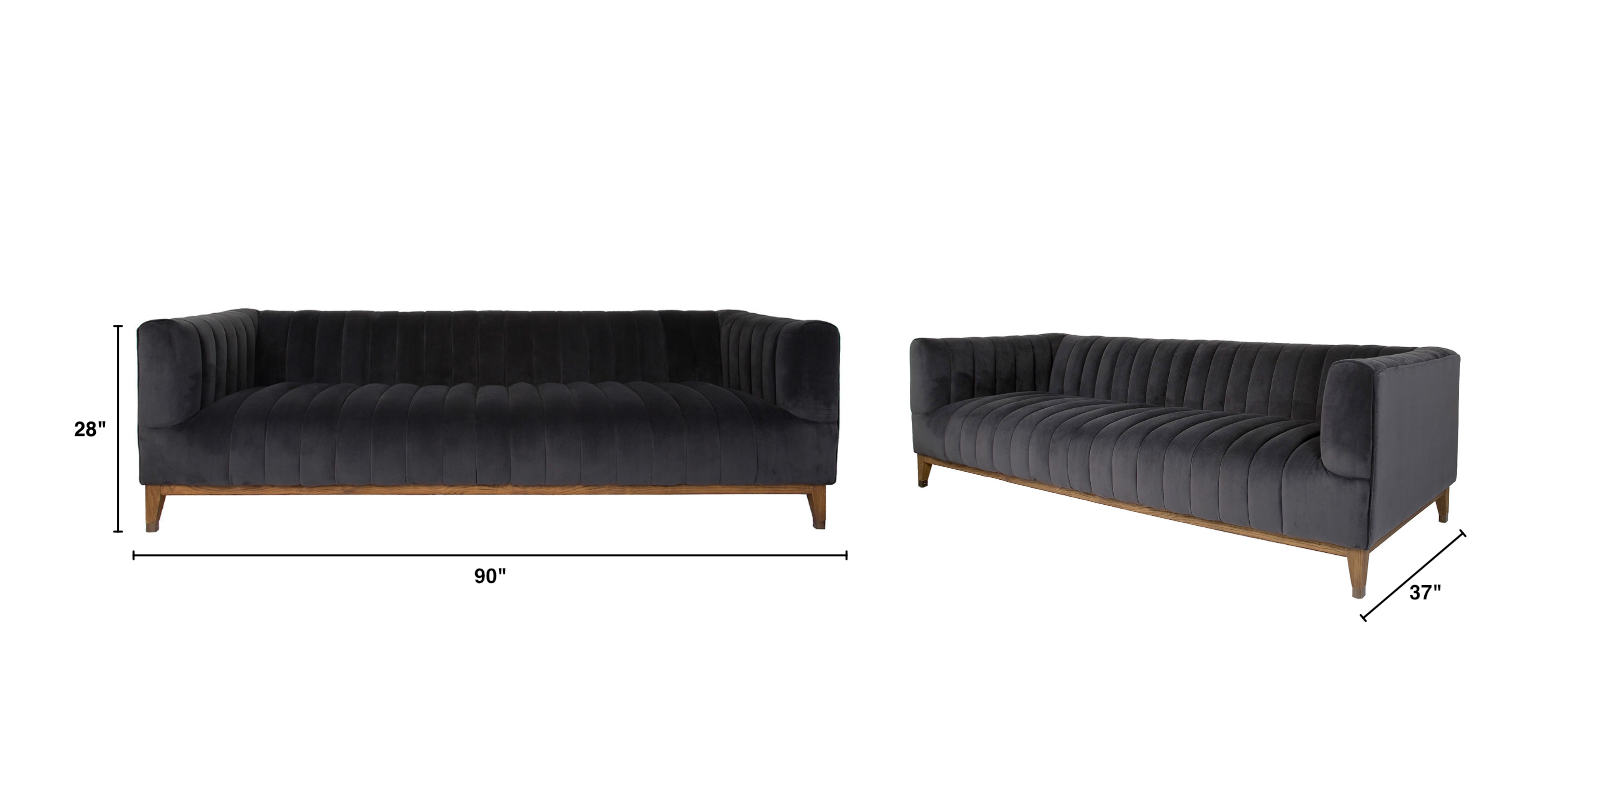 Elliot sofa dimensions